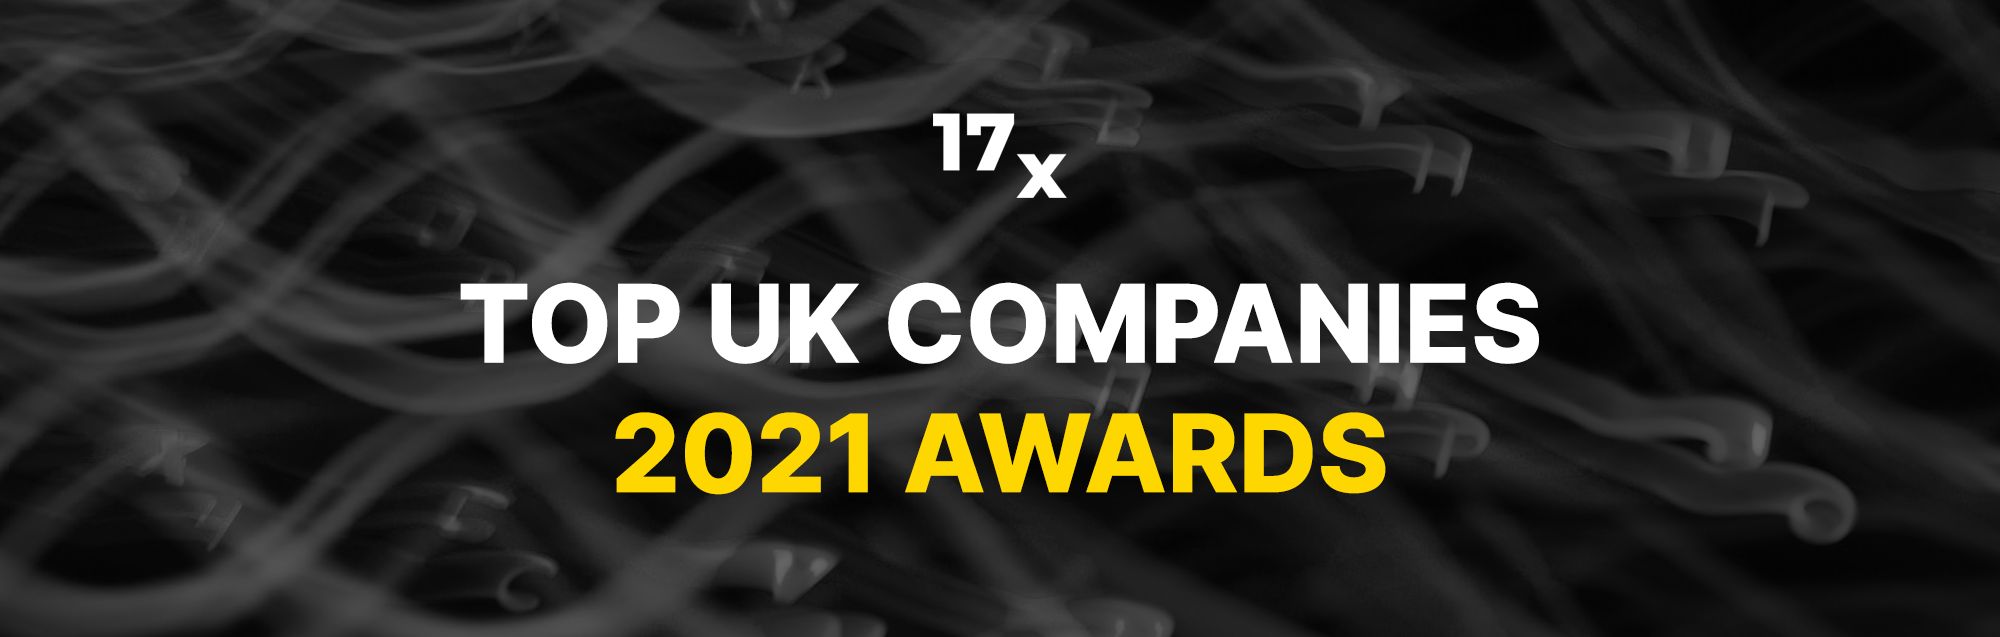 17x top uk companies Award